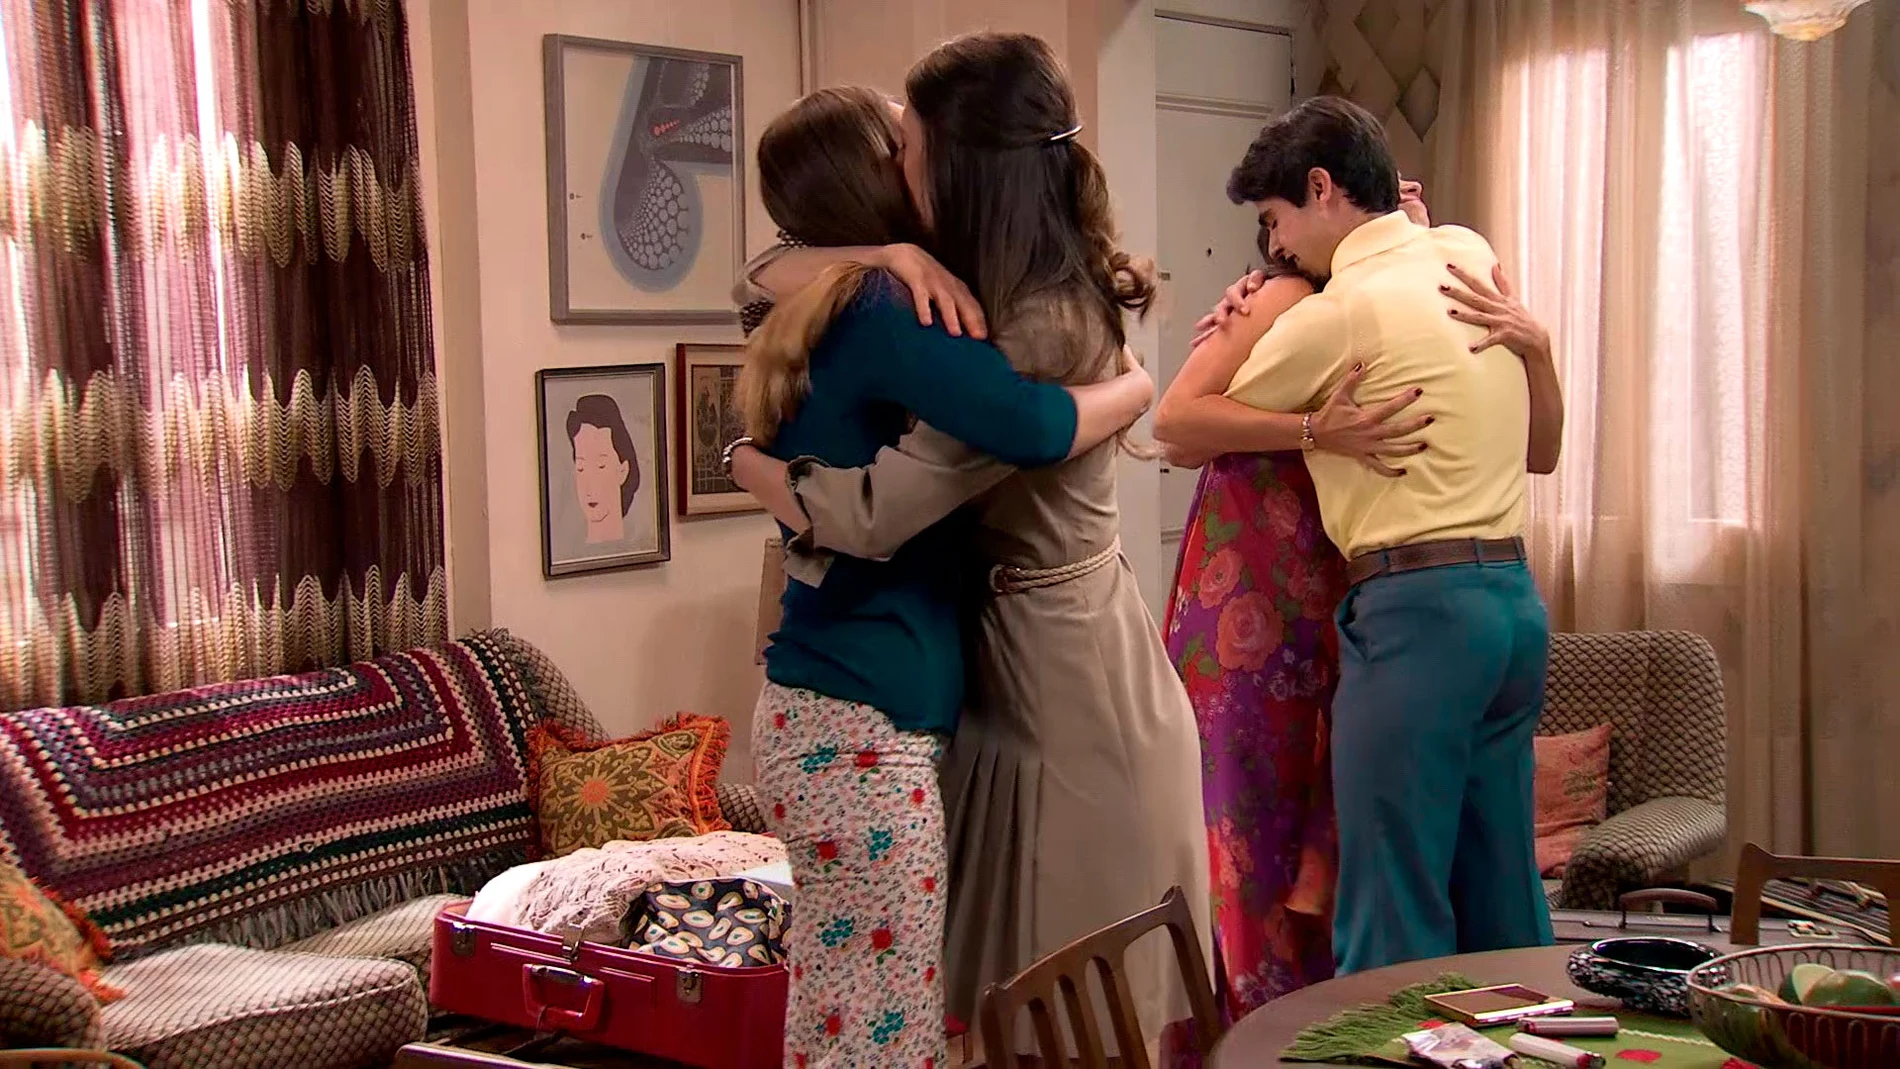 Marina y Mateo se despiden de Luisita y Amelia: "Que la amistad nunca se rompa, ha sido un placer"